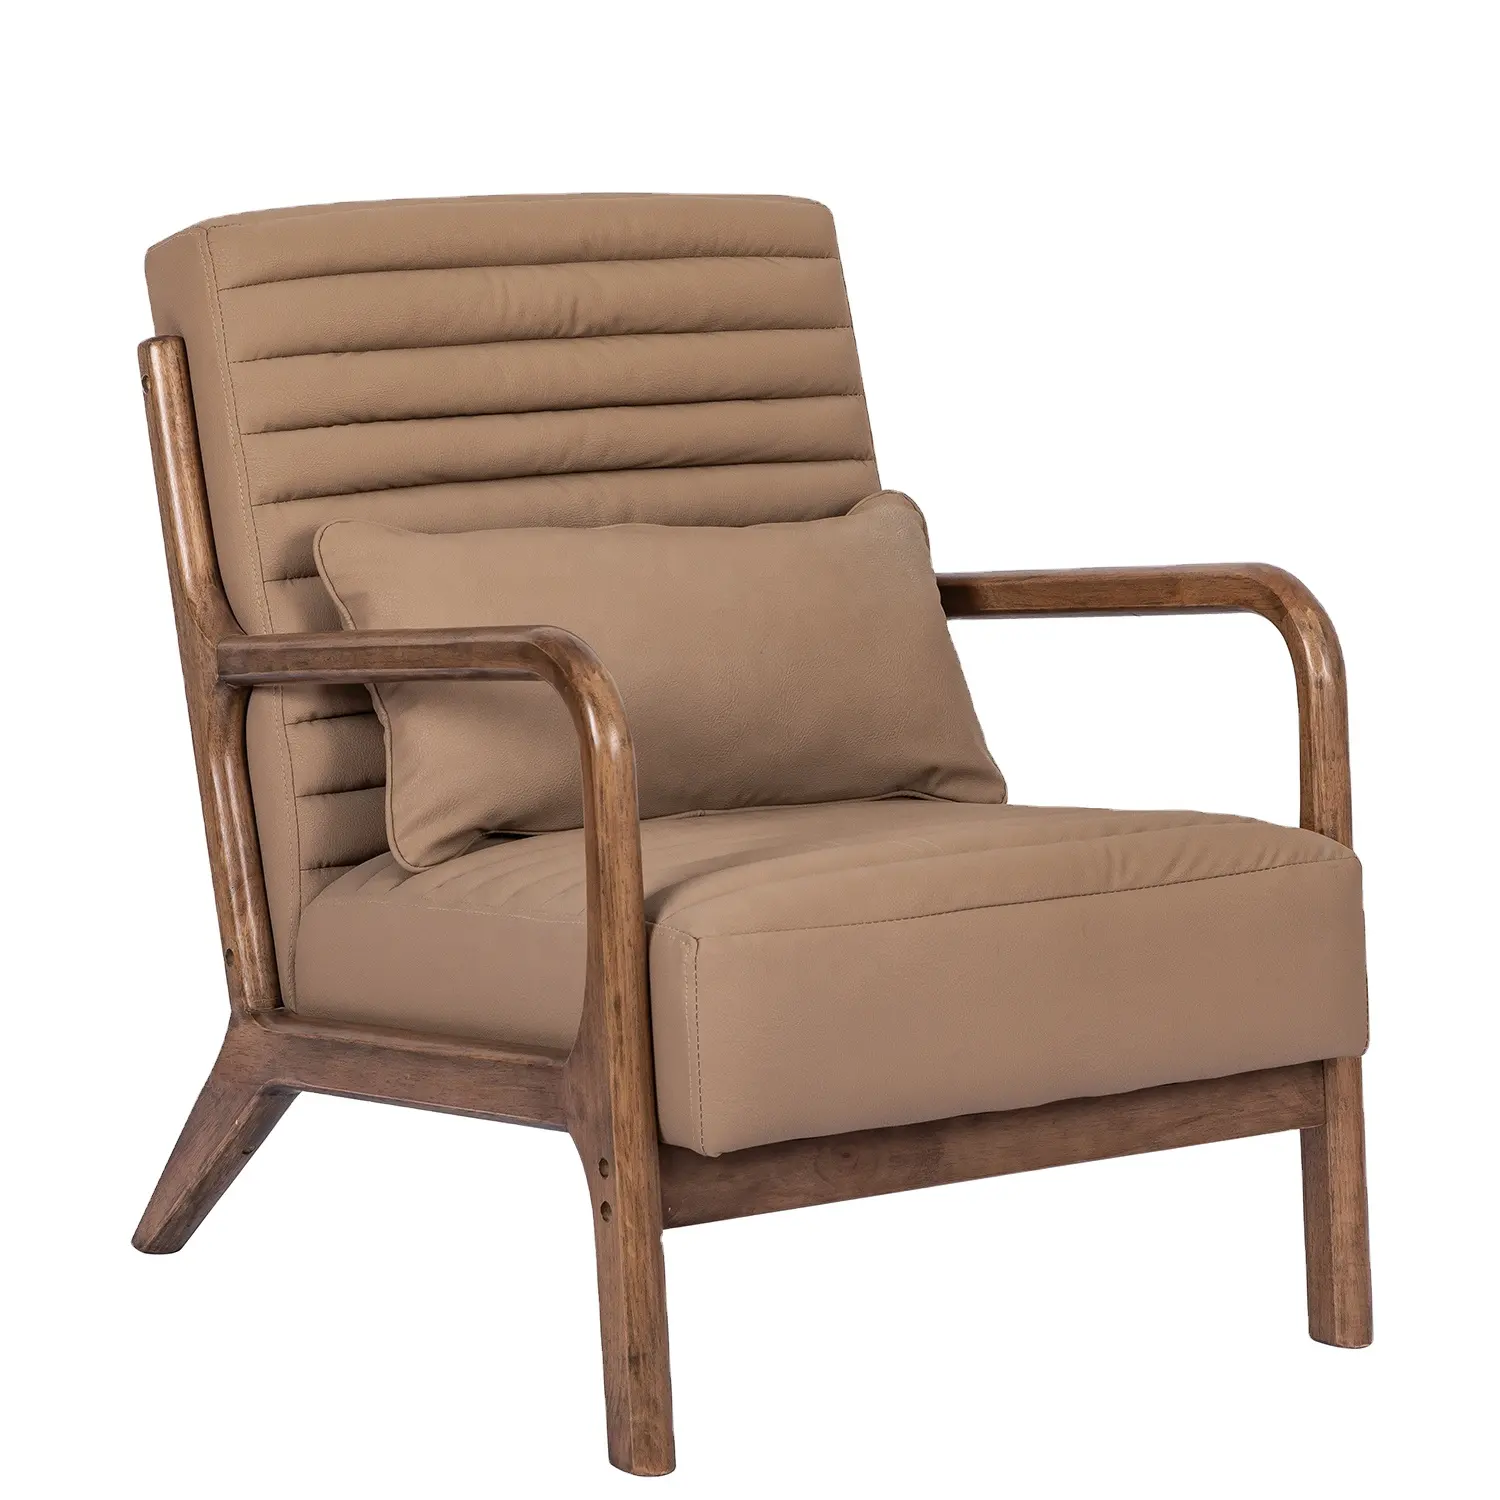 Getufteter Sessel mit Leder akzents tuhl und Polyester faser polsterung mit hoher Rückenlehne